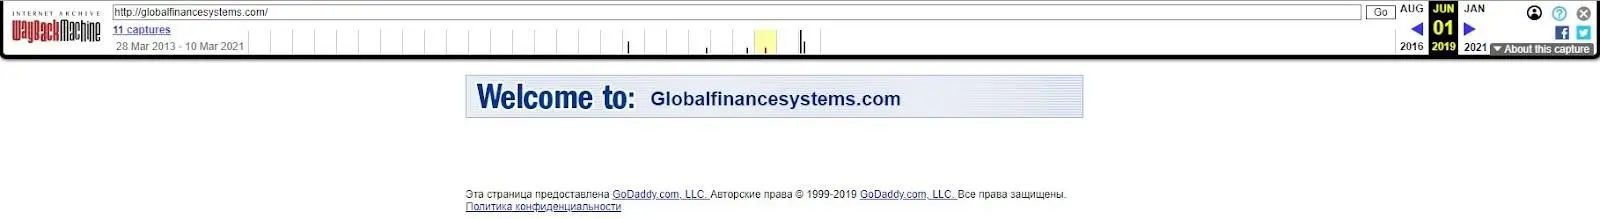 globalfinancesystems.com